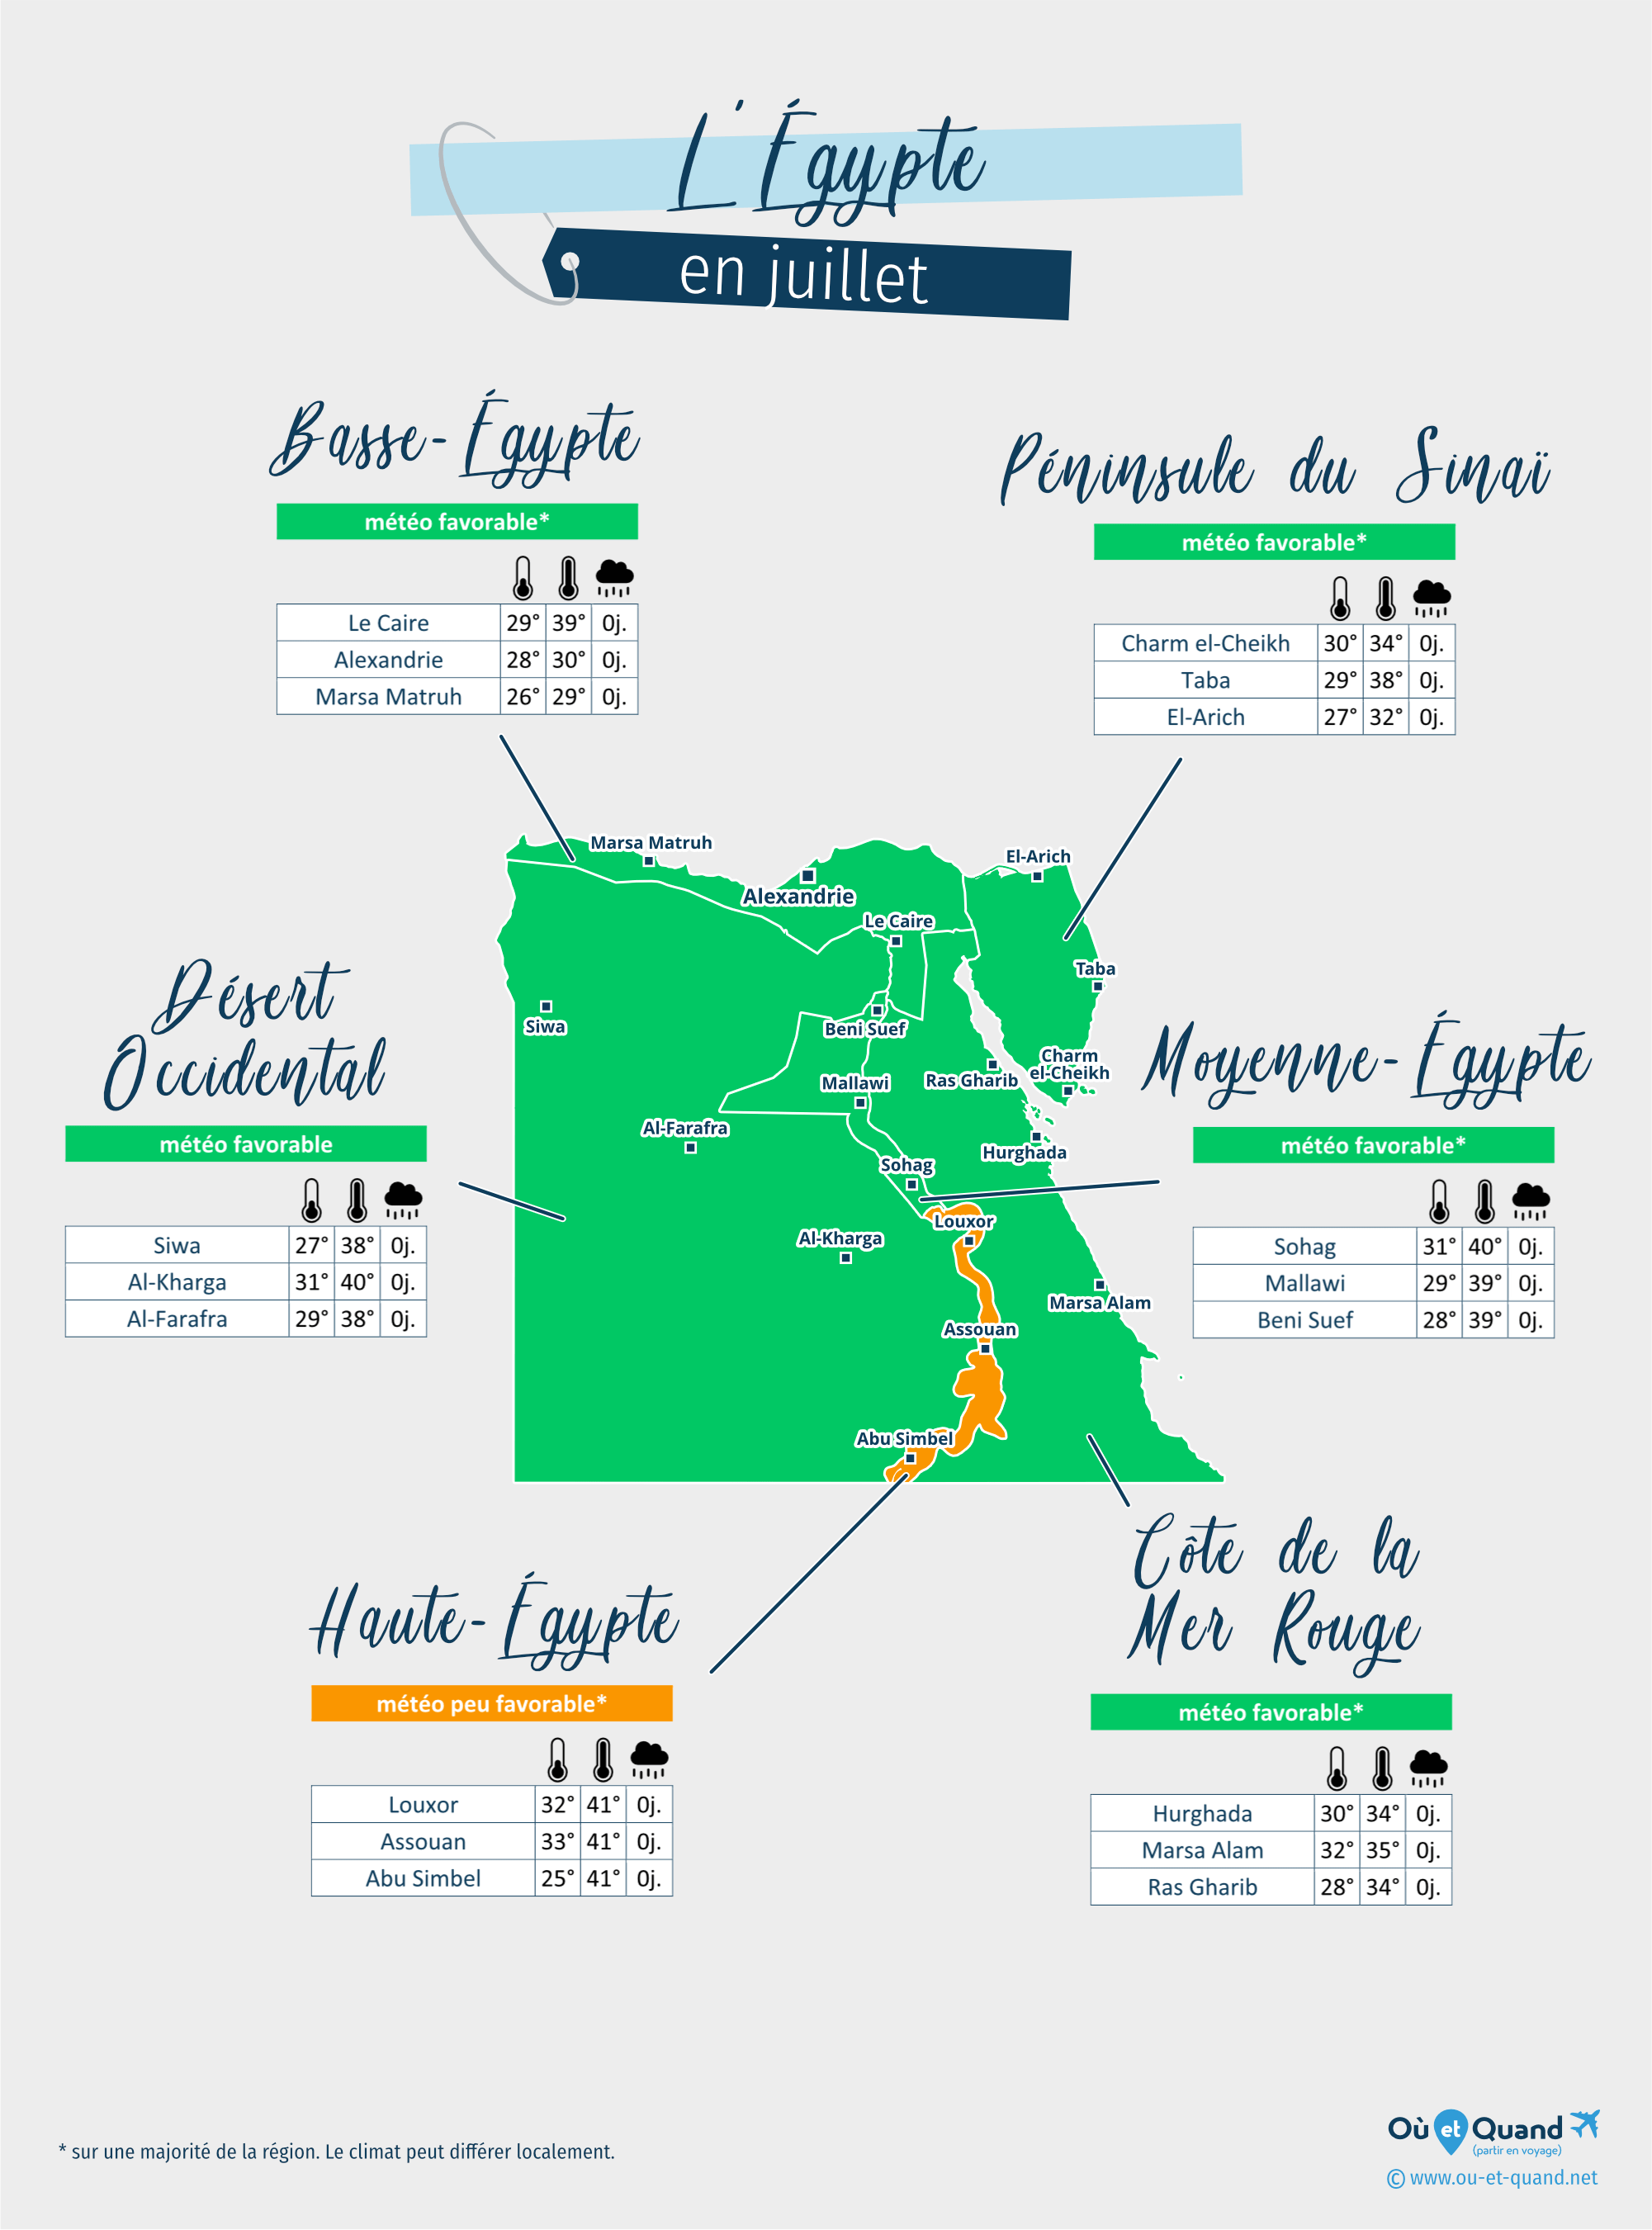 Carte de la météo en juillet dans les régions de l'Égypte